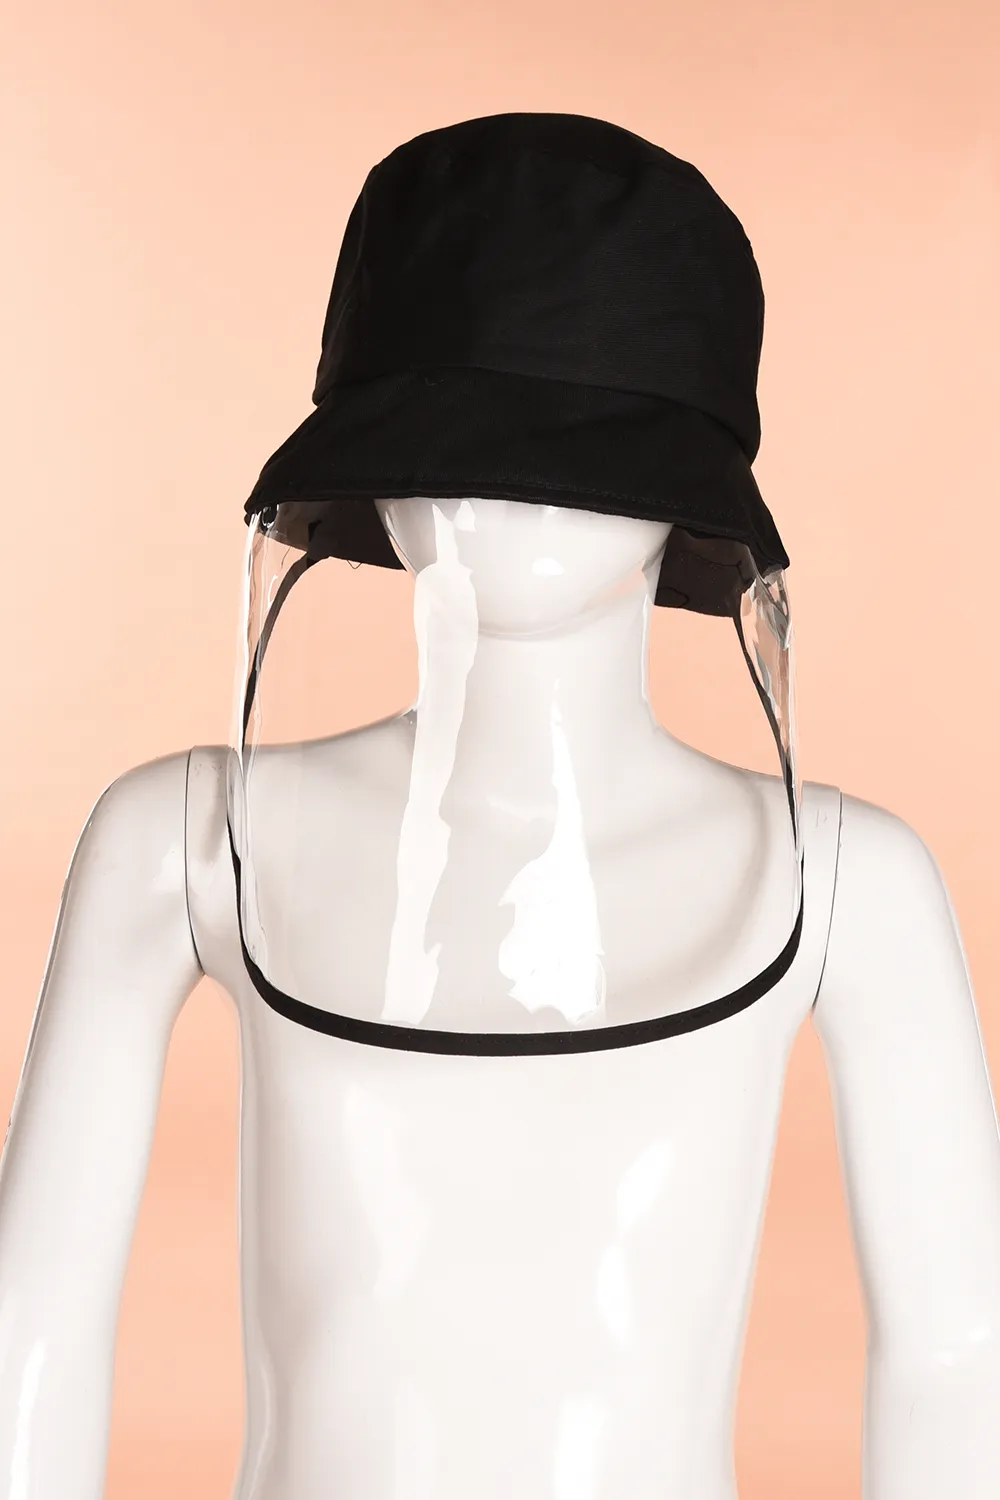 mascarar NOVO segurança anti poeira Tampa protetora preto com chapéu anti saliva tampa anti pó rosto cheio máscara de proteção olhos